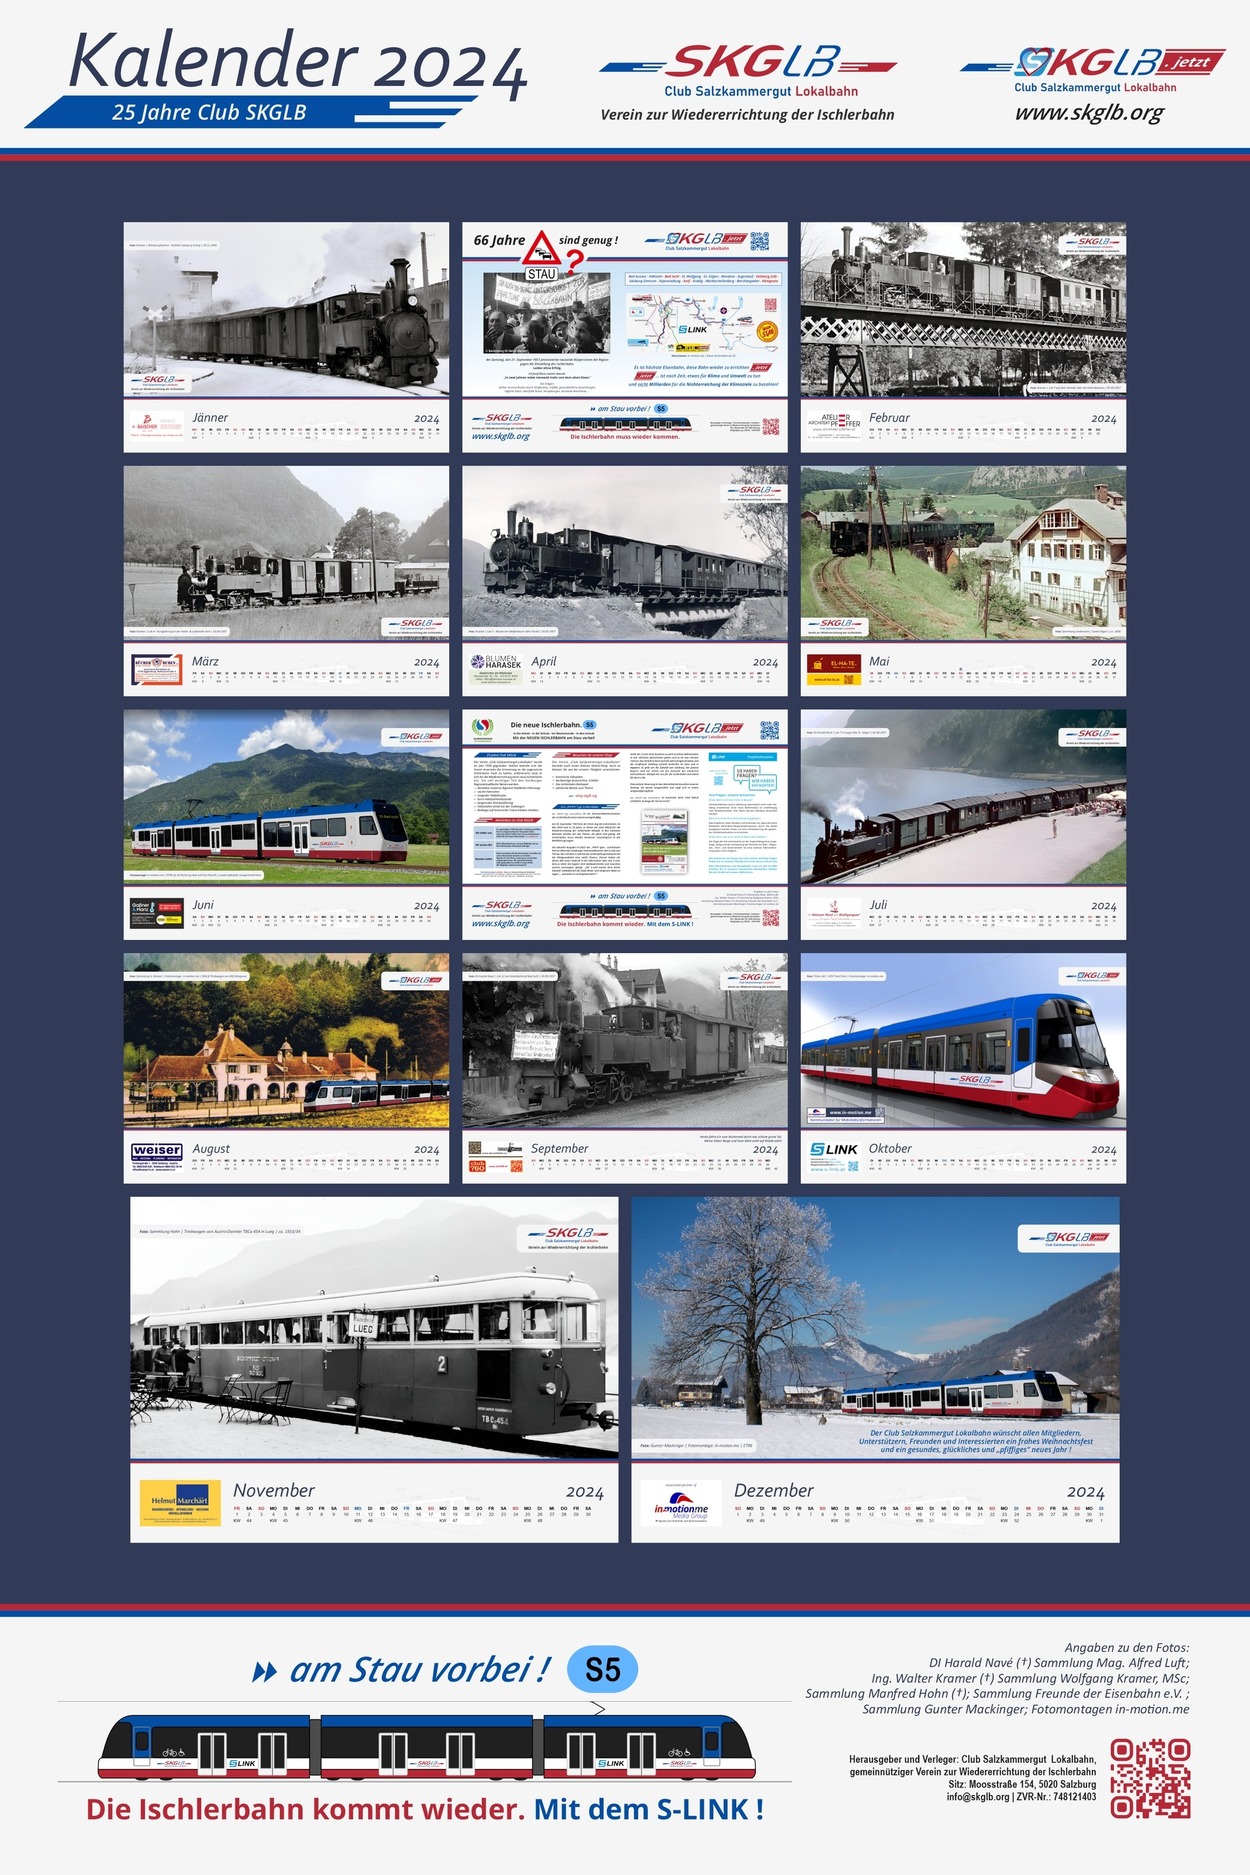 Ischlerbahn Kalender 2024